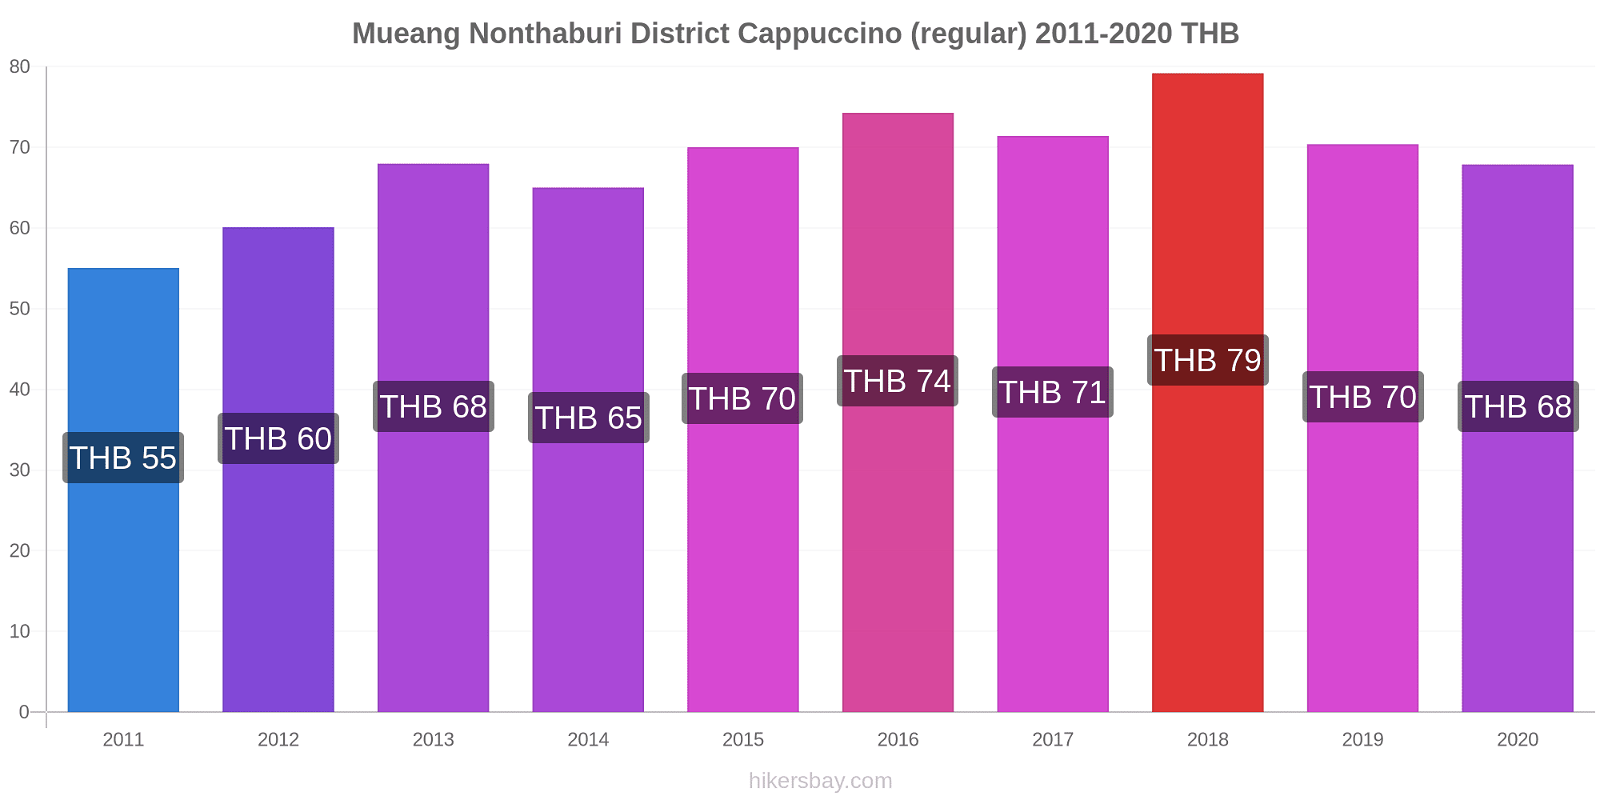 Mueang Nonthaburi District variação de preço Capuccino (regular) hikersbay.com